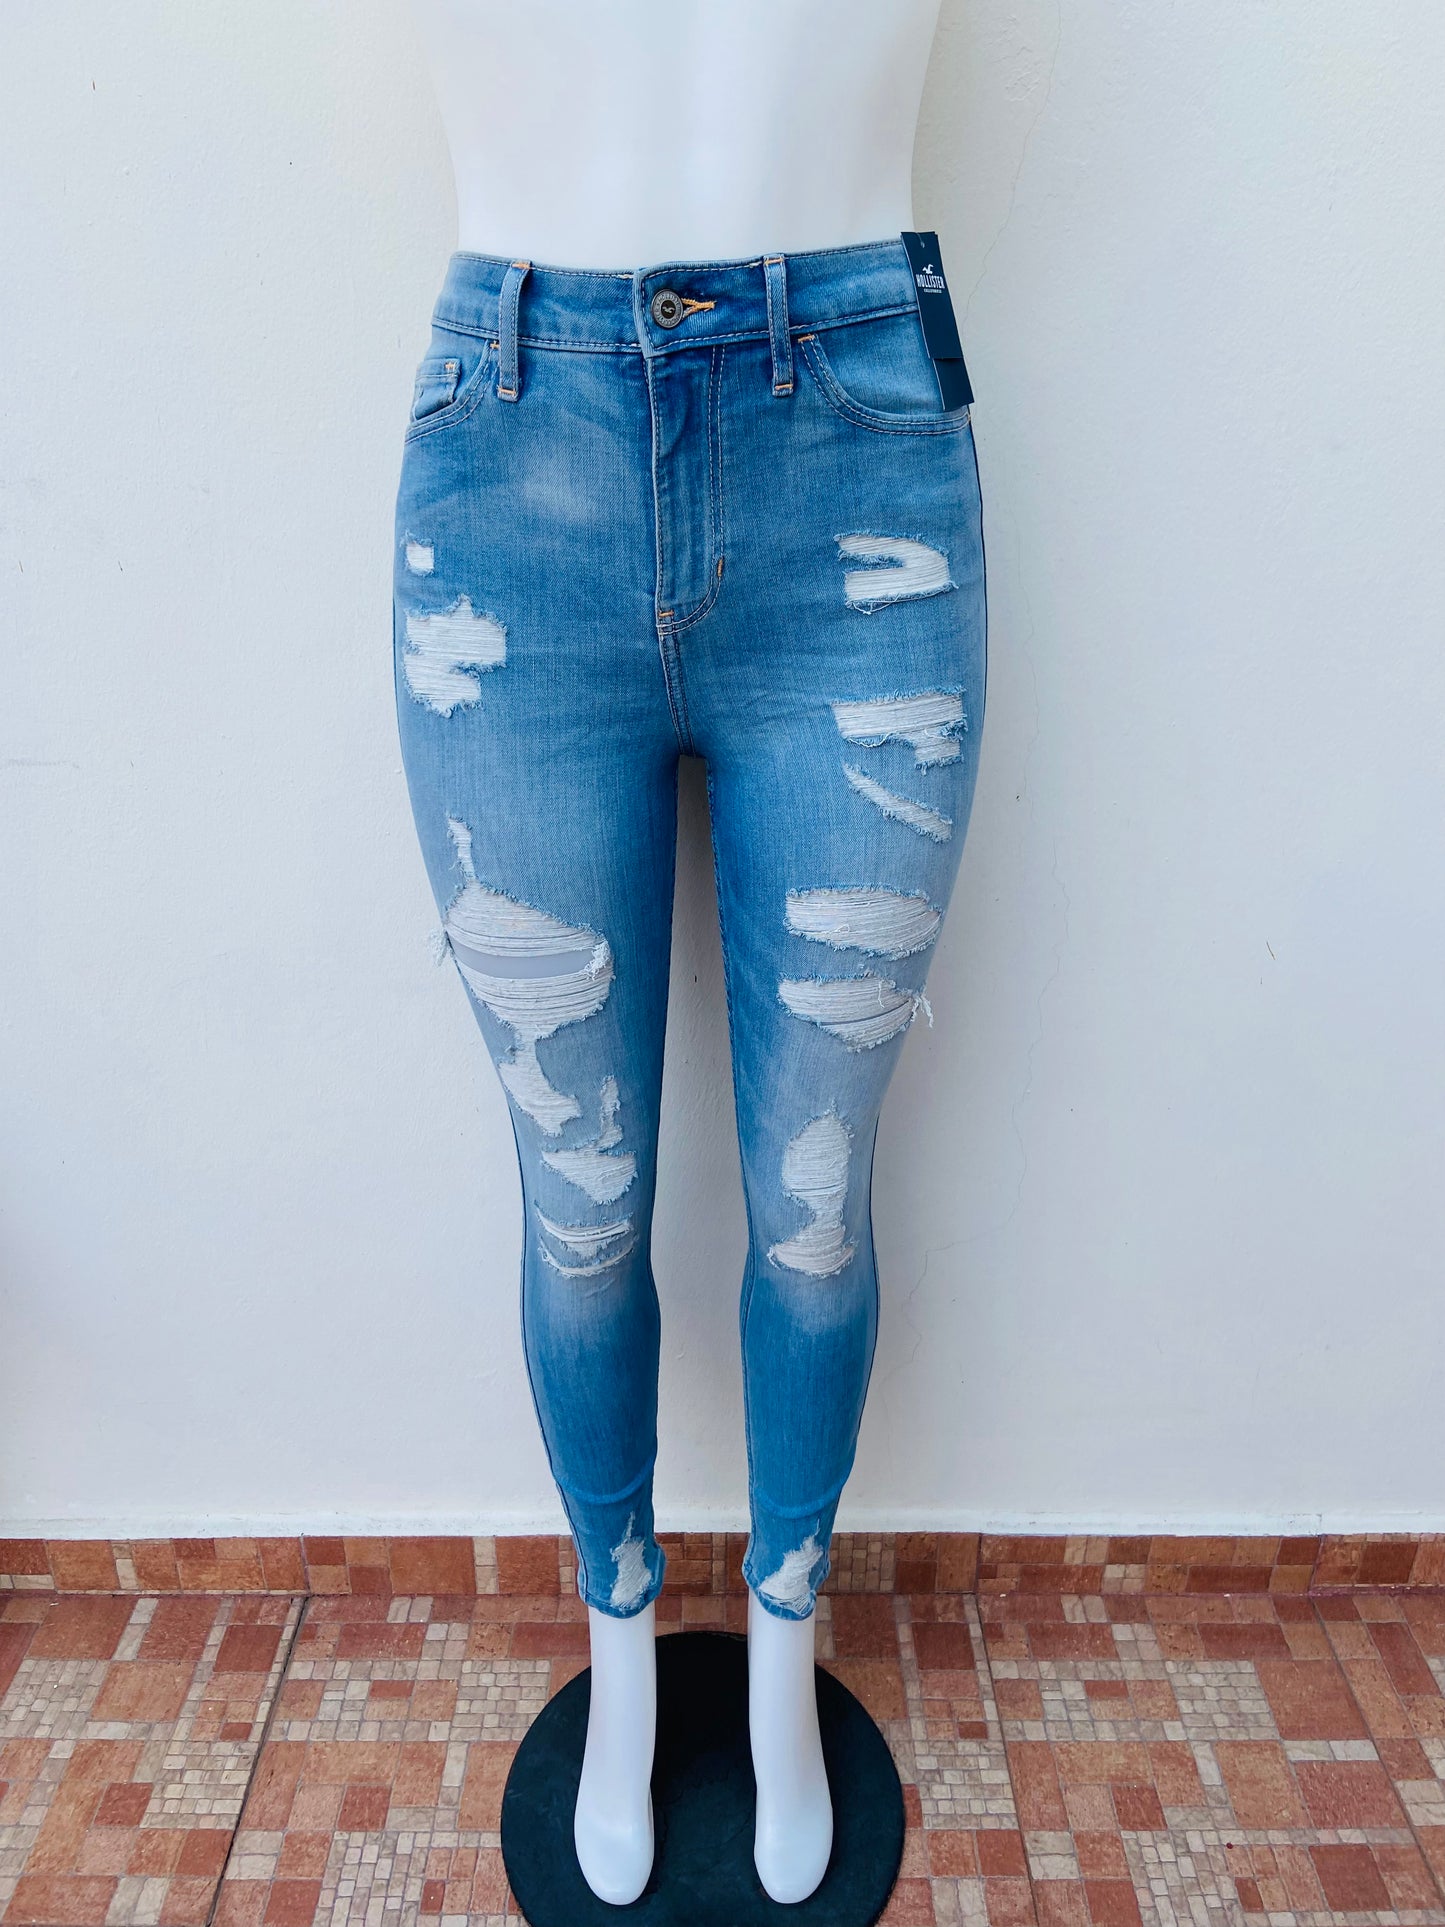 Pantalón Jeans Hollister original, azul claro con rasgados, CURVY HIGH-RISE SÚPER SKINNY.